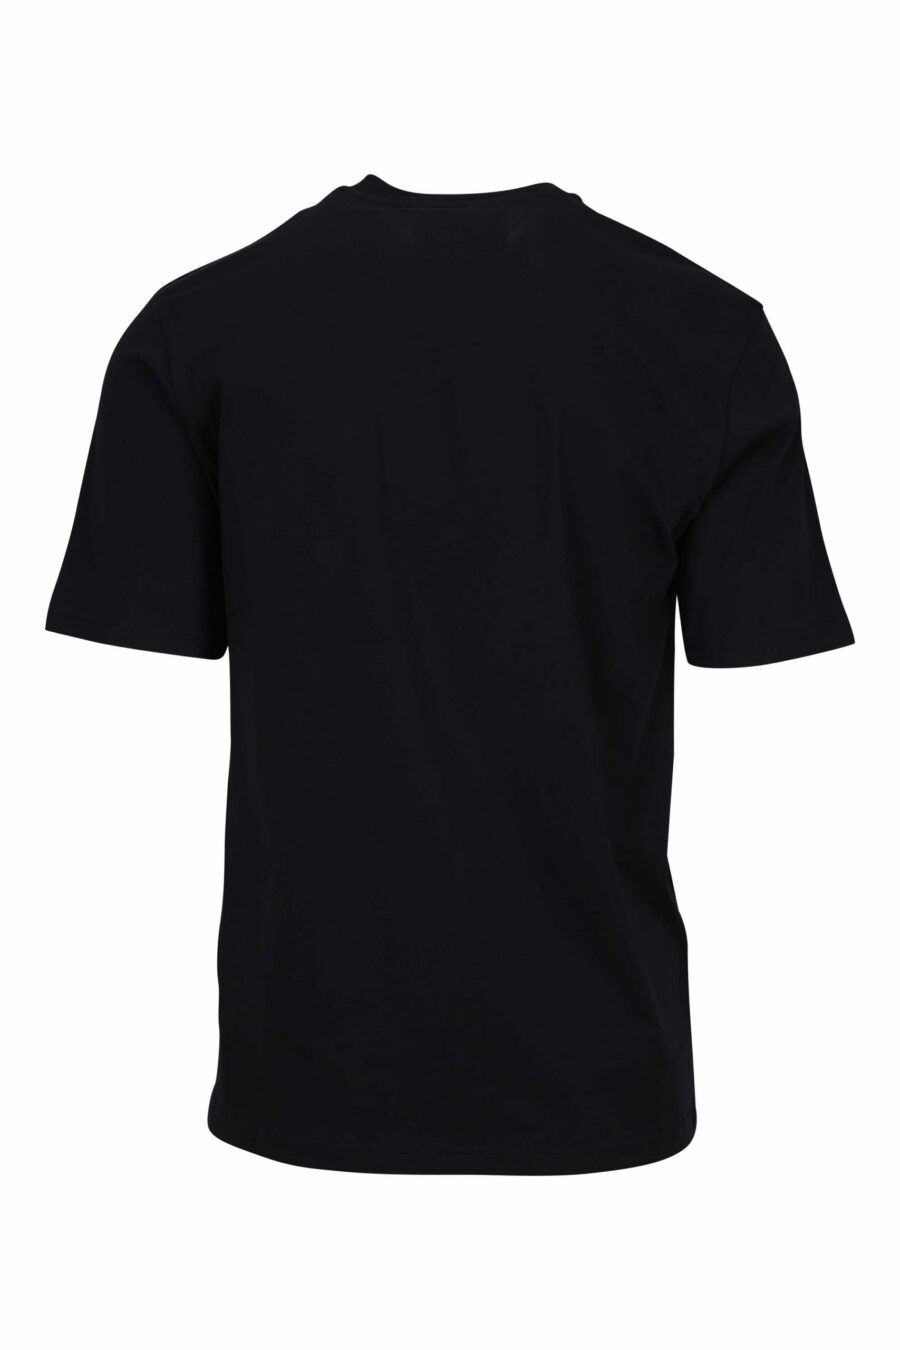 T-shirt preta com desenho de mini logótipo de urso - 667113767819 1 à escala